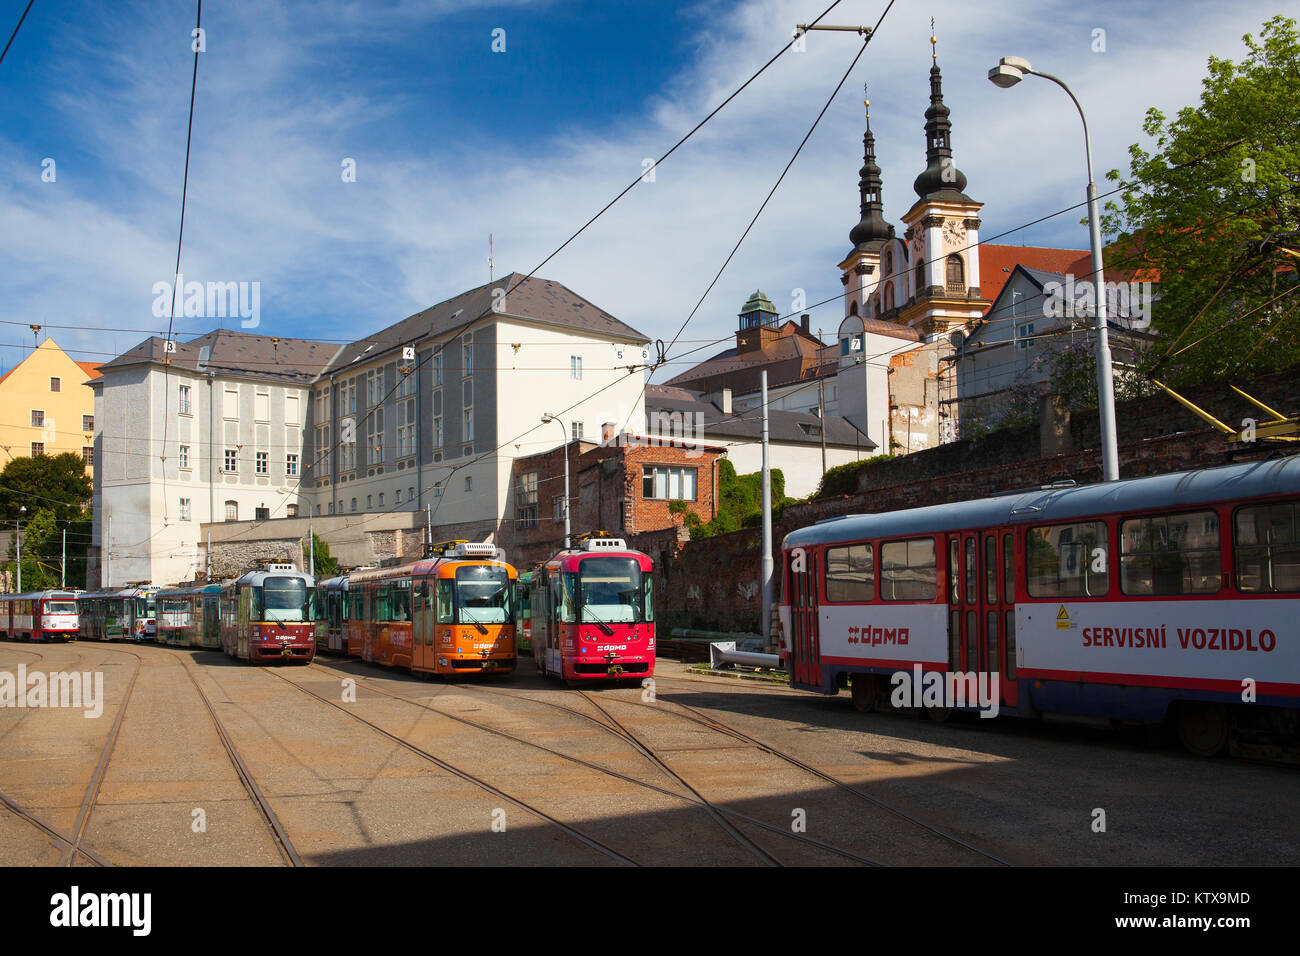 Olomouc, Tschechische Republik - Mai 5,2017: Die Haltestelle befindet sich im historischen Zentrum von Olmütz. berühmten Unesco Weltkulturerbe Stadt und touristische Attraktion. Stockfoto